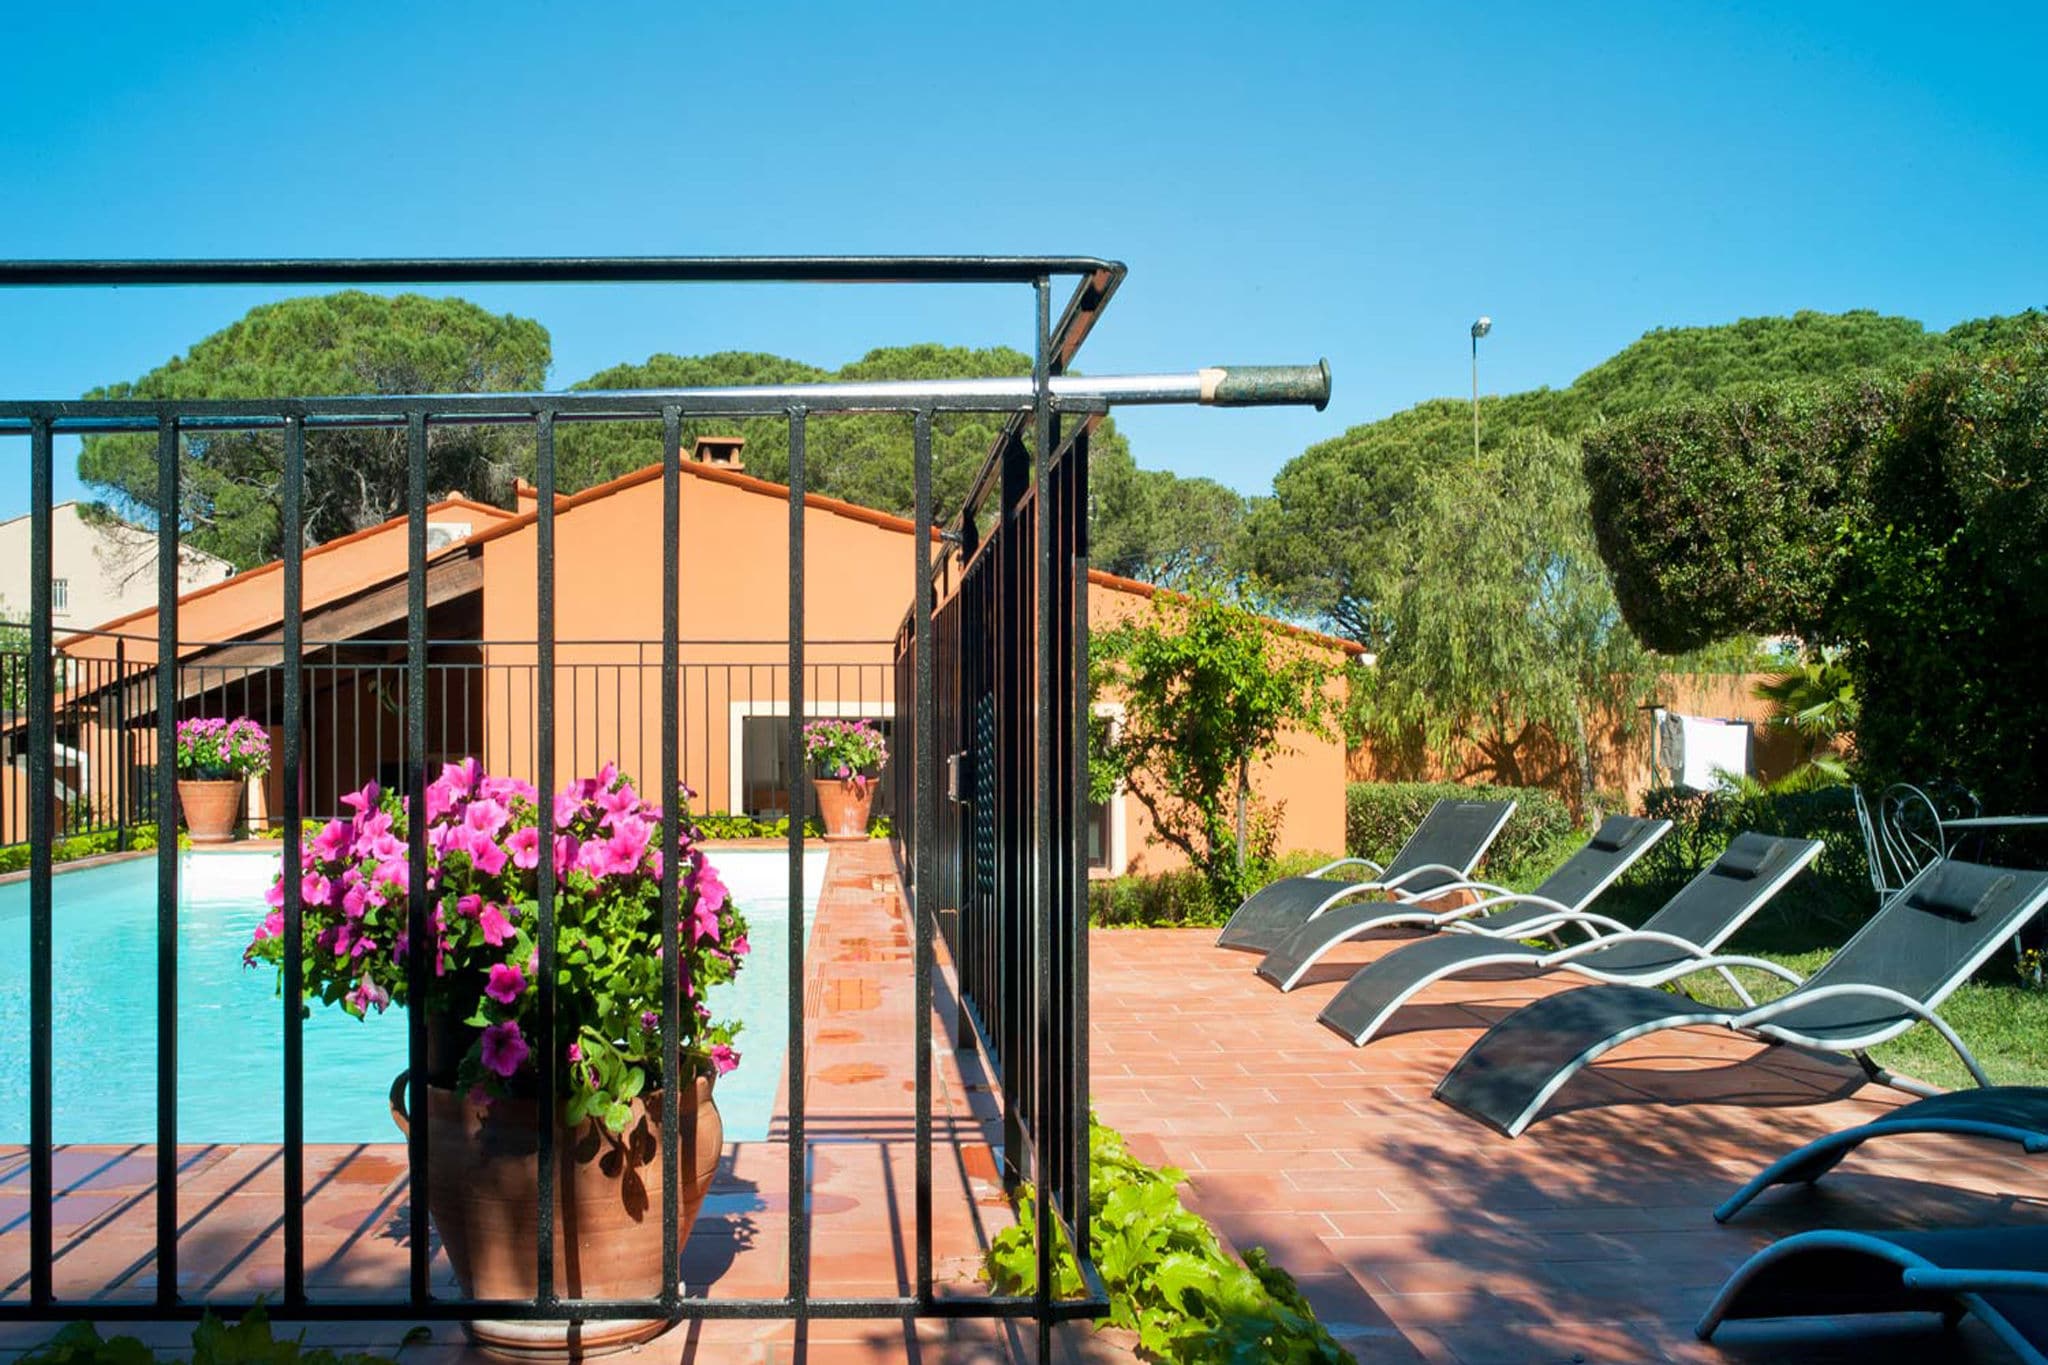 Magnifique maison de vacances à Fréjus avec piscine privée